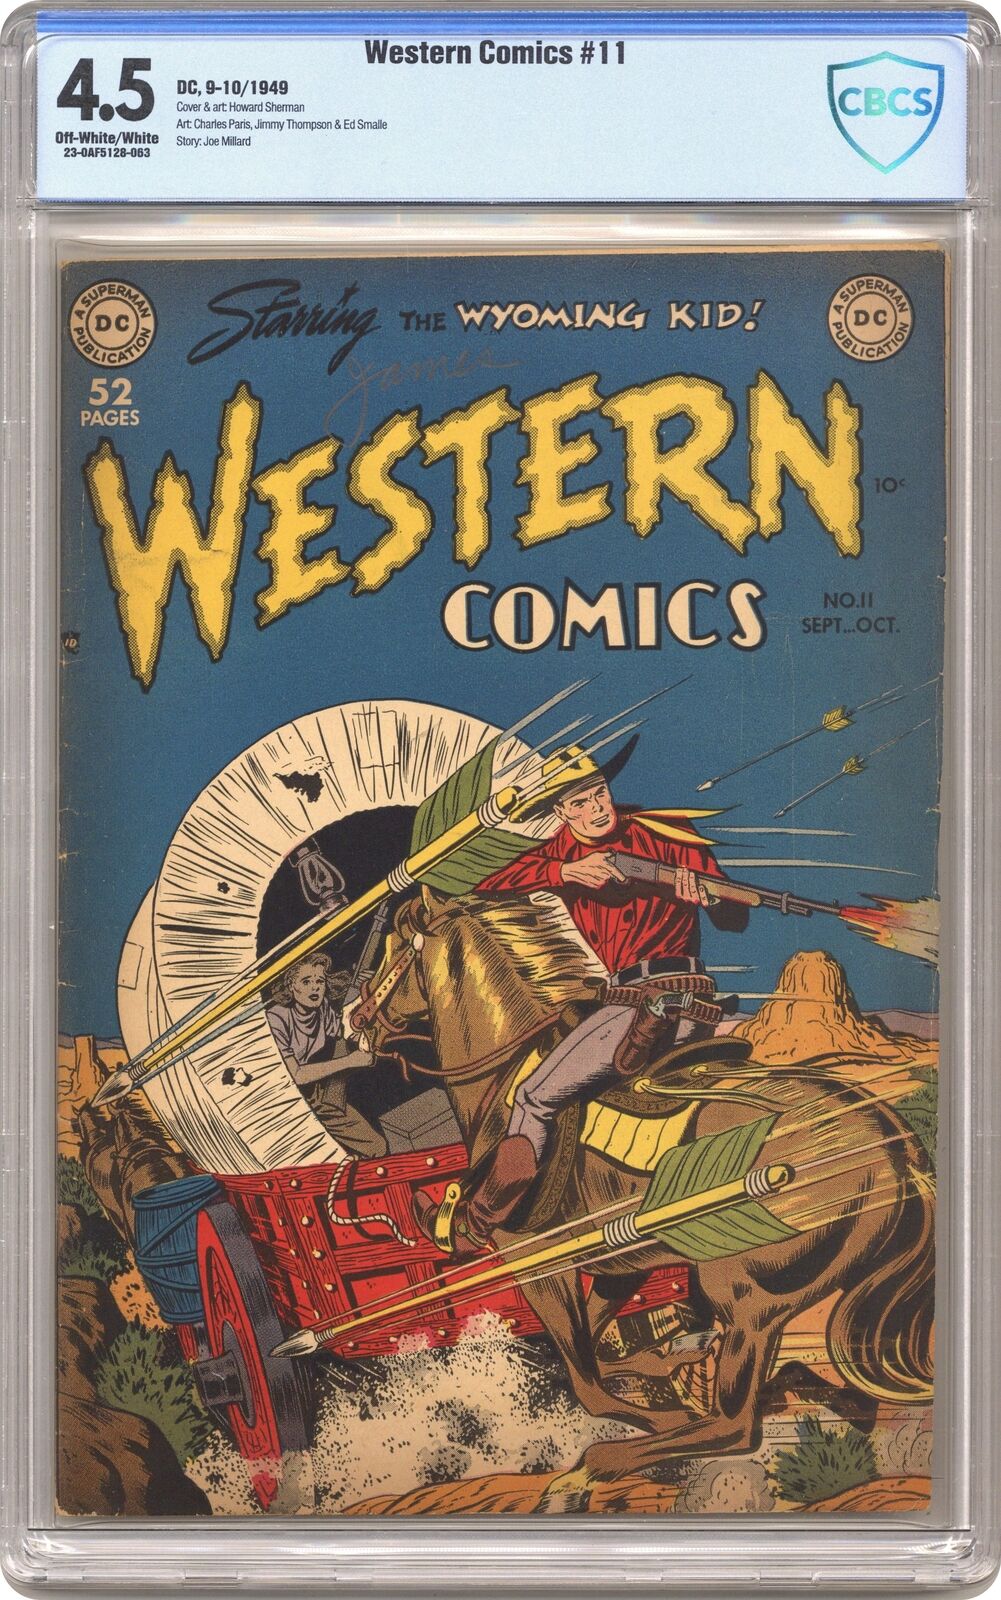 Western Comics #11 CBCS 4.5 1949 23-0AF5128-063